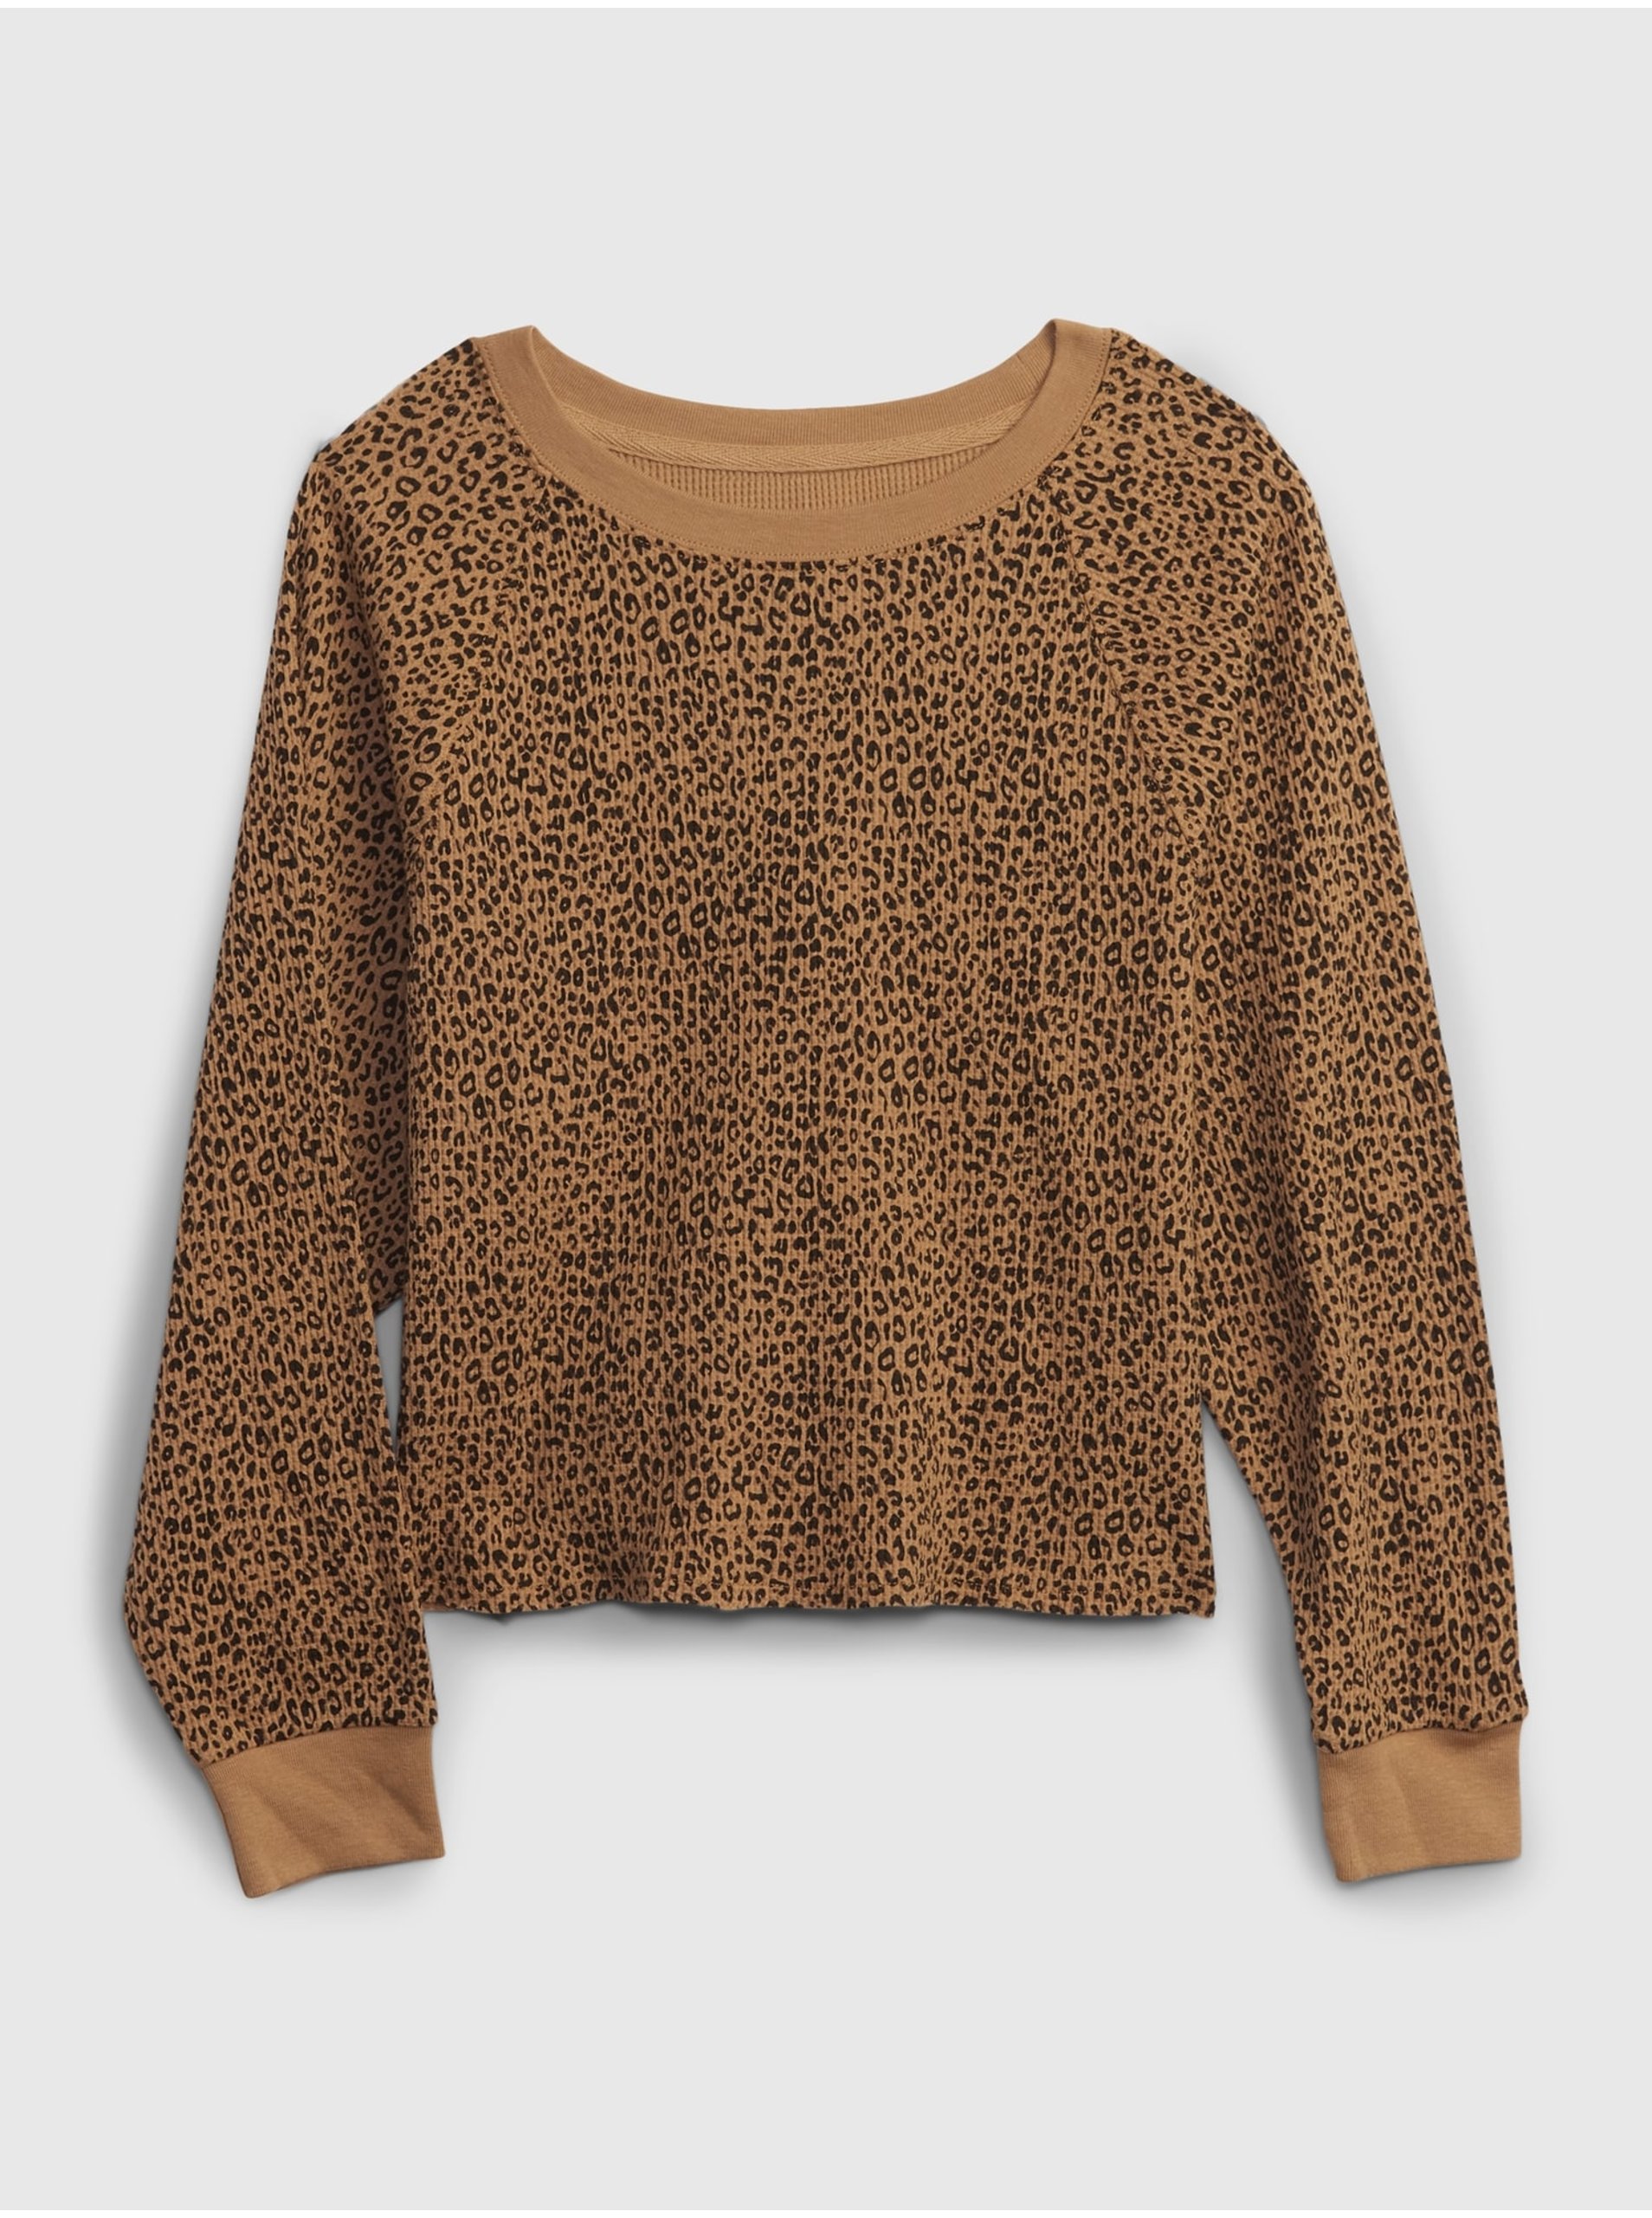 Lacno Hnedé dievčenské tričko GAP so vzorom leoparda